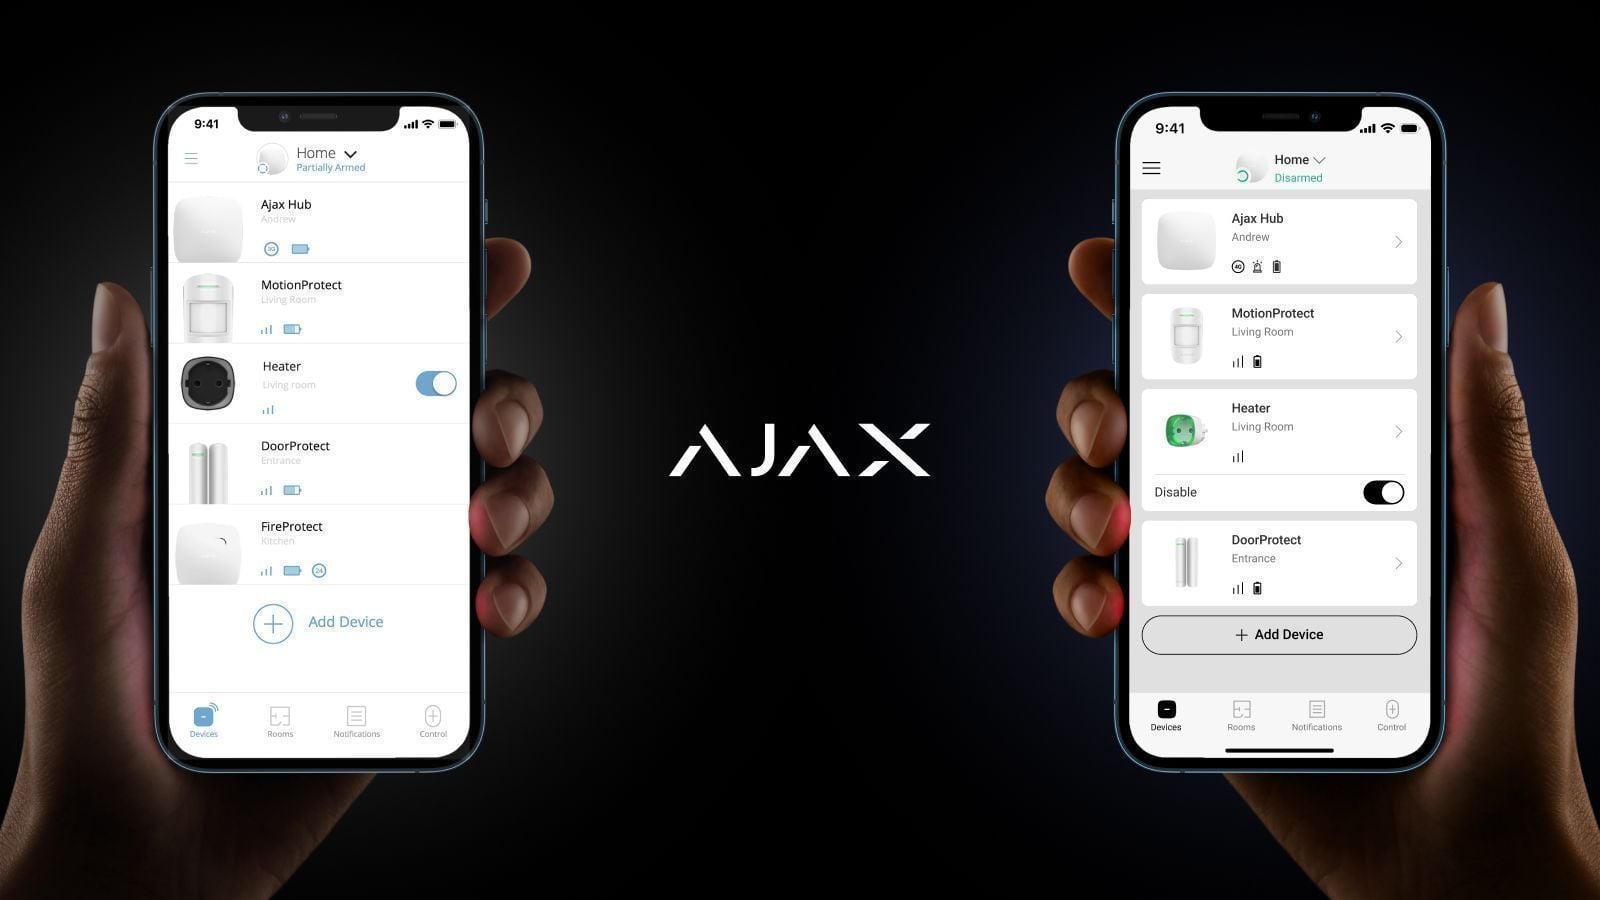 Diseño actualizado de las apps Ajax: todo para su confort